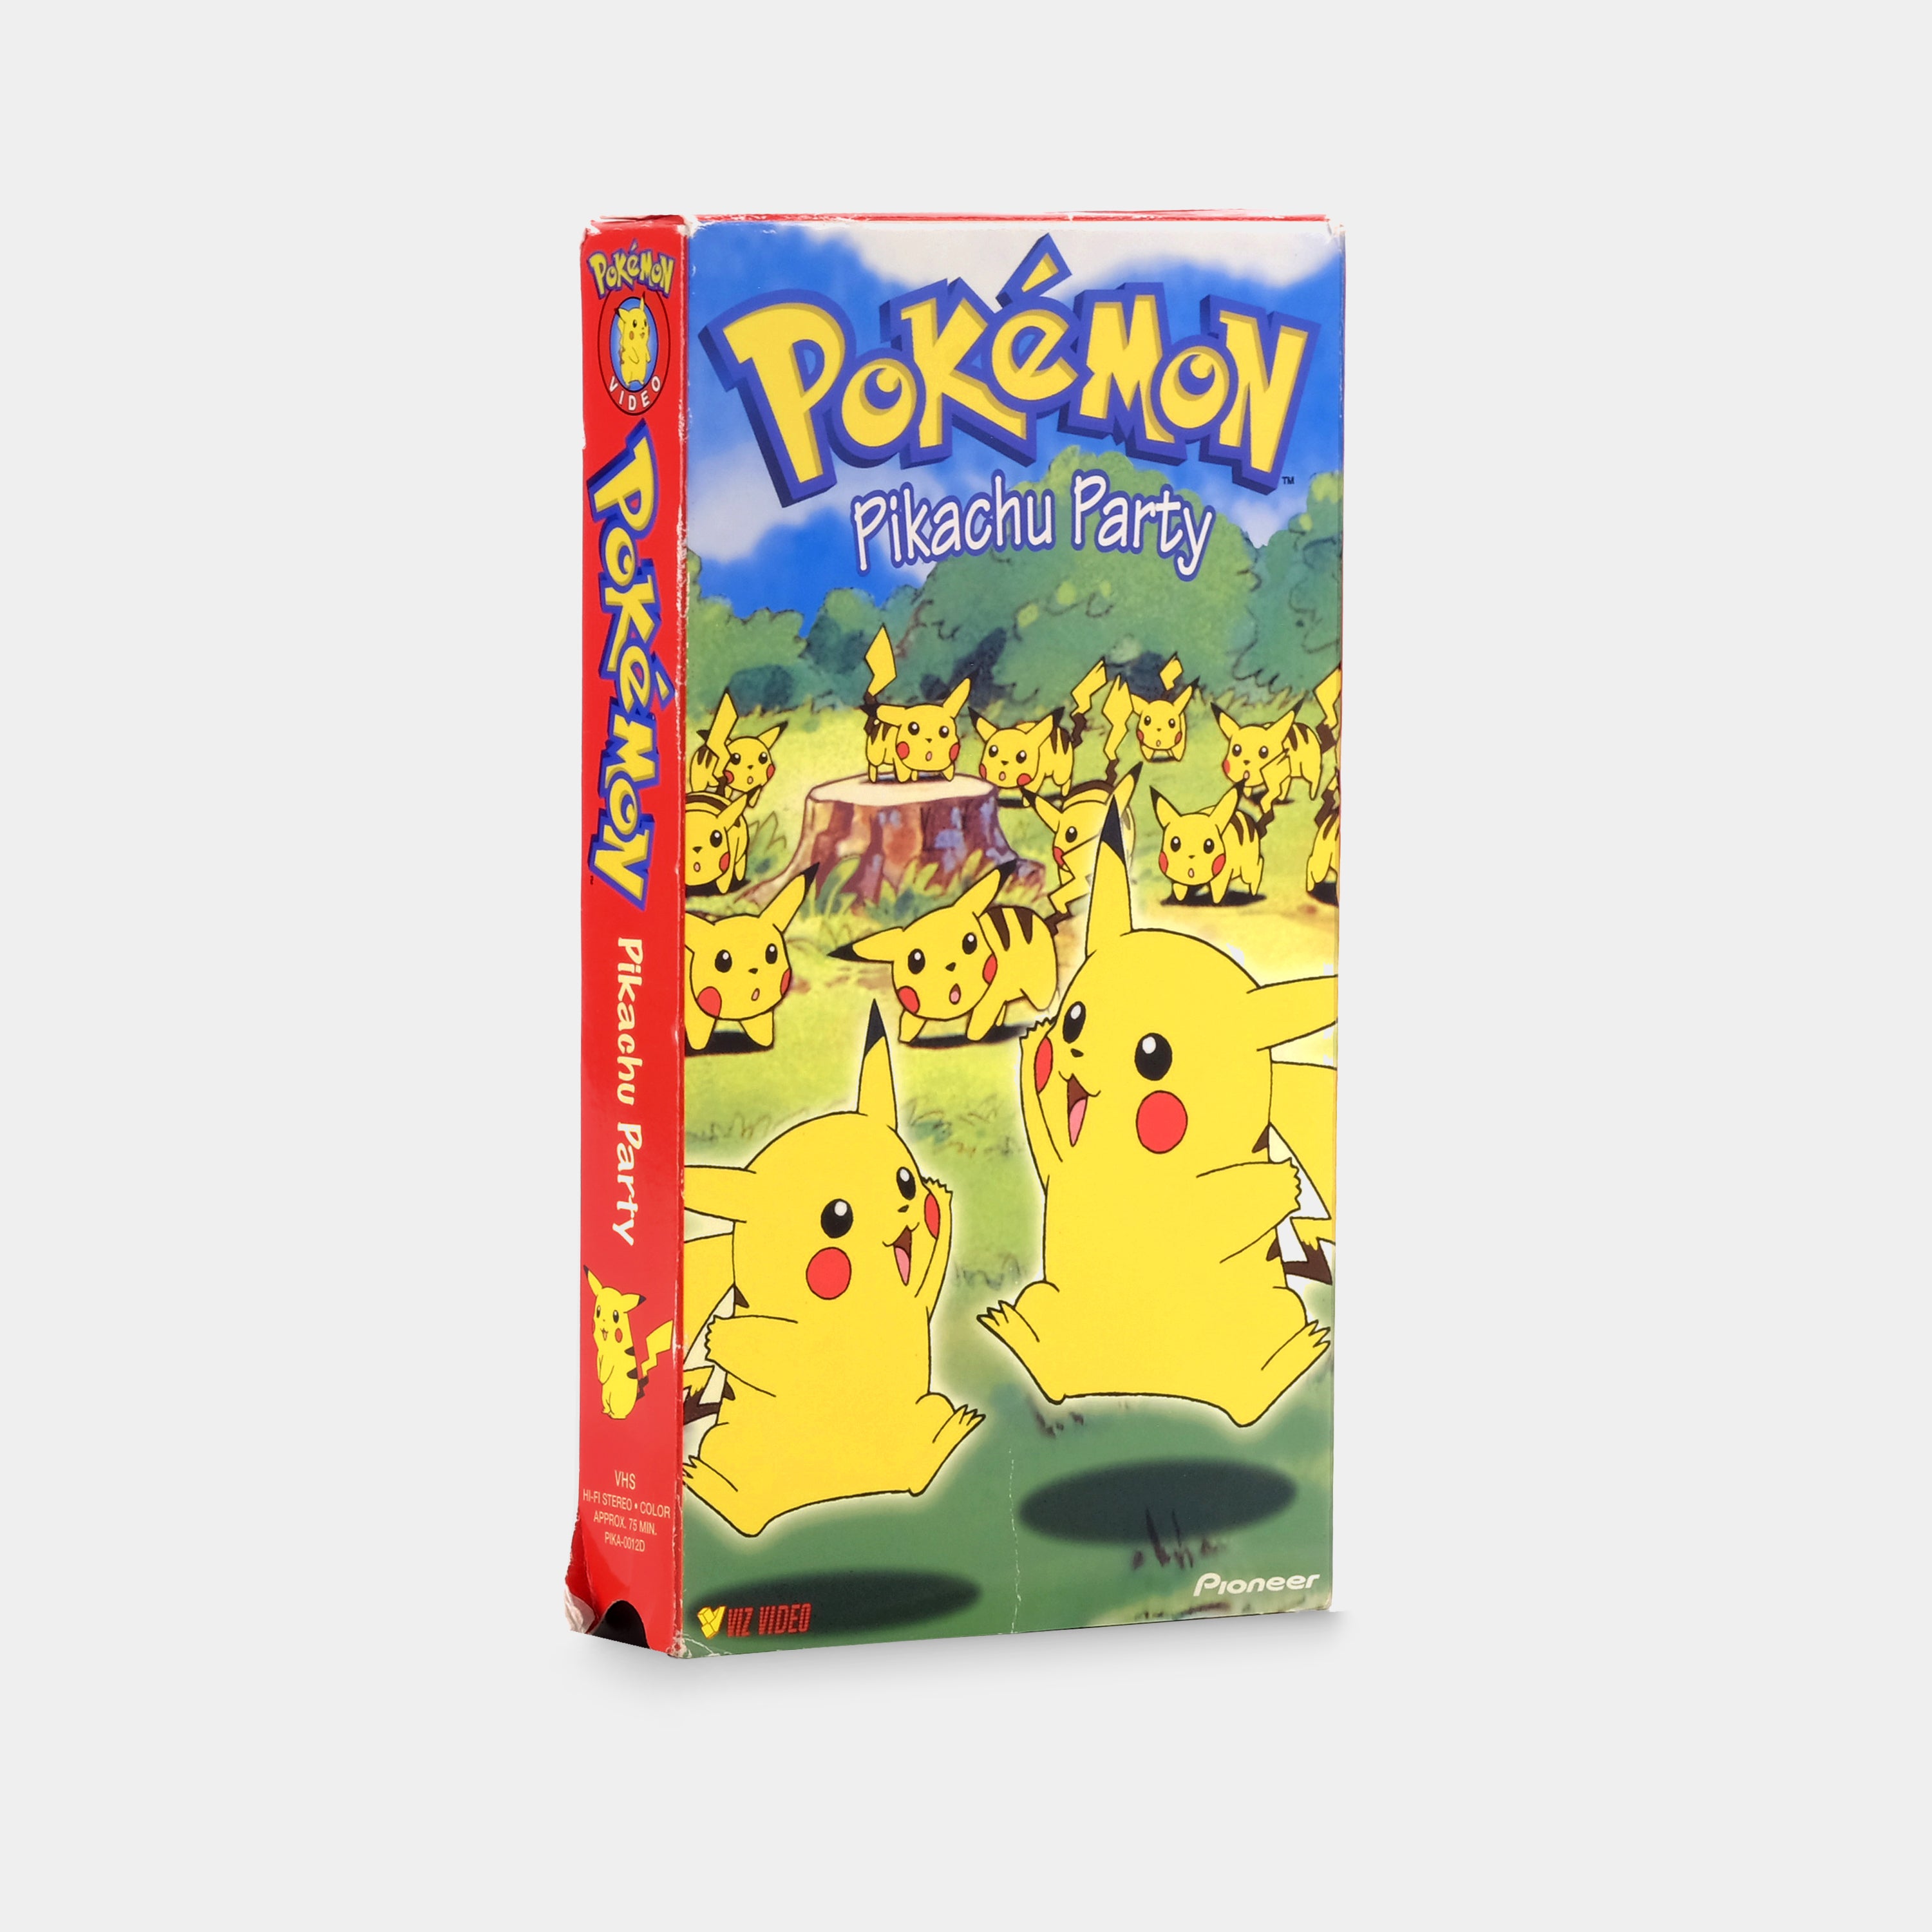 Pokémon: Pikachu Party VHS Tape